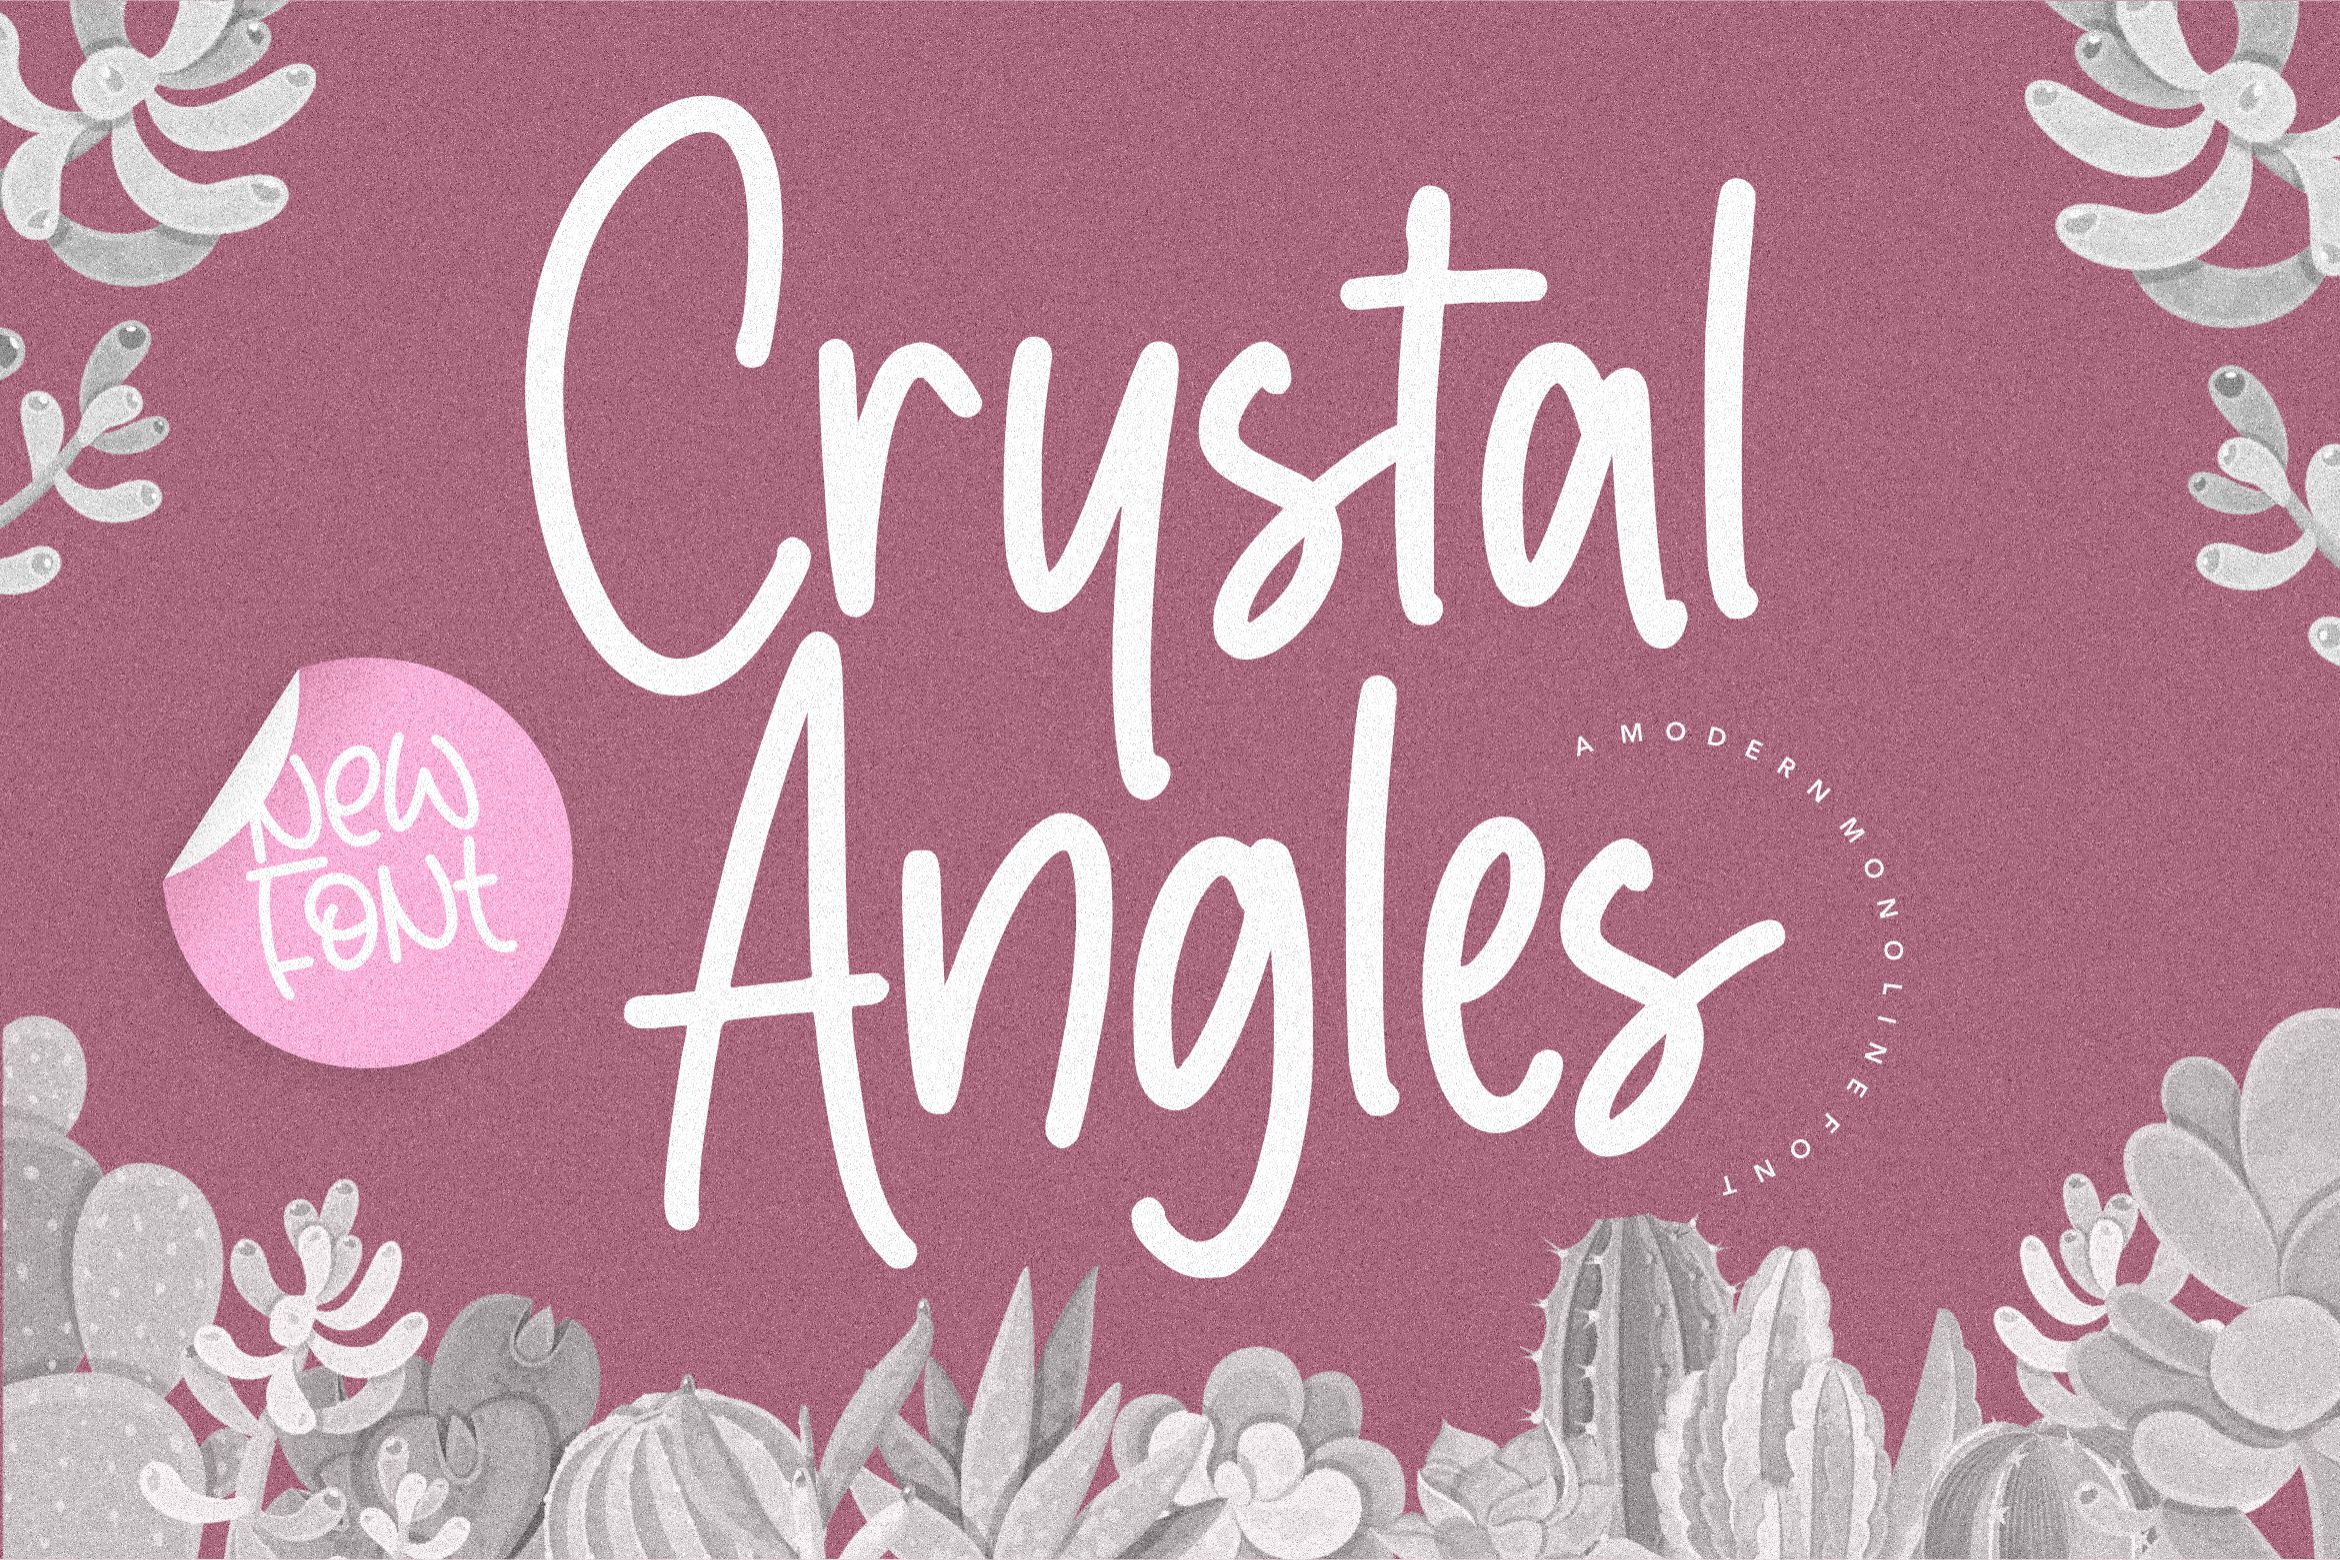 Crystal Angles